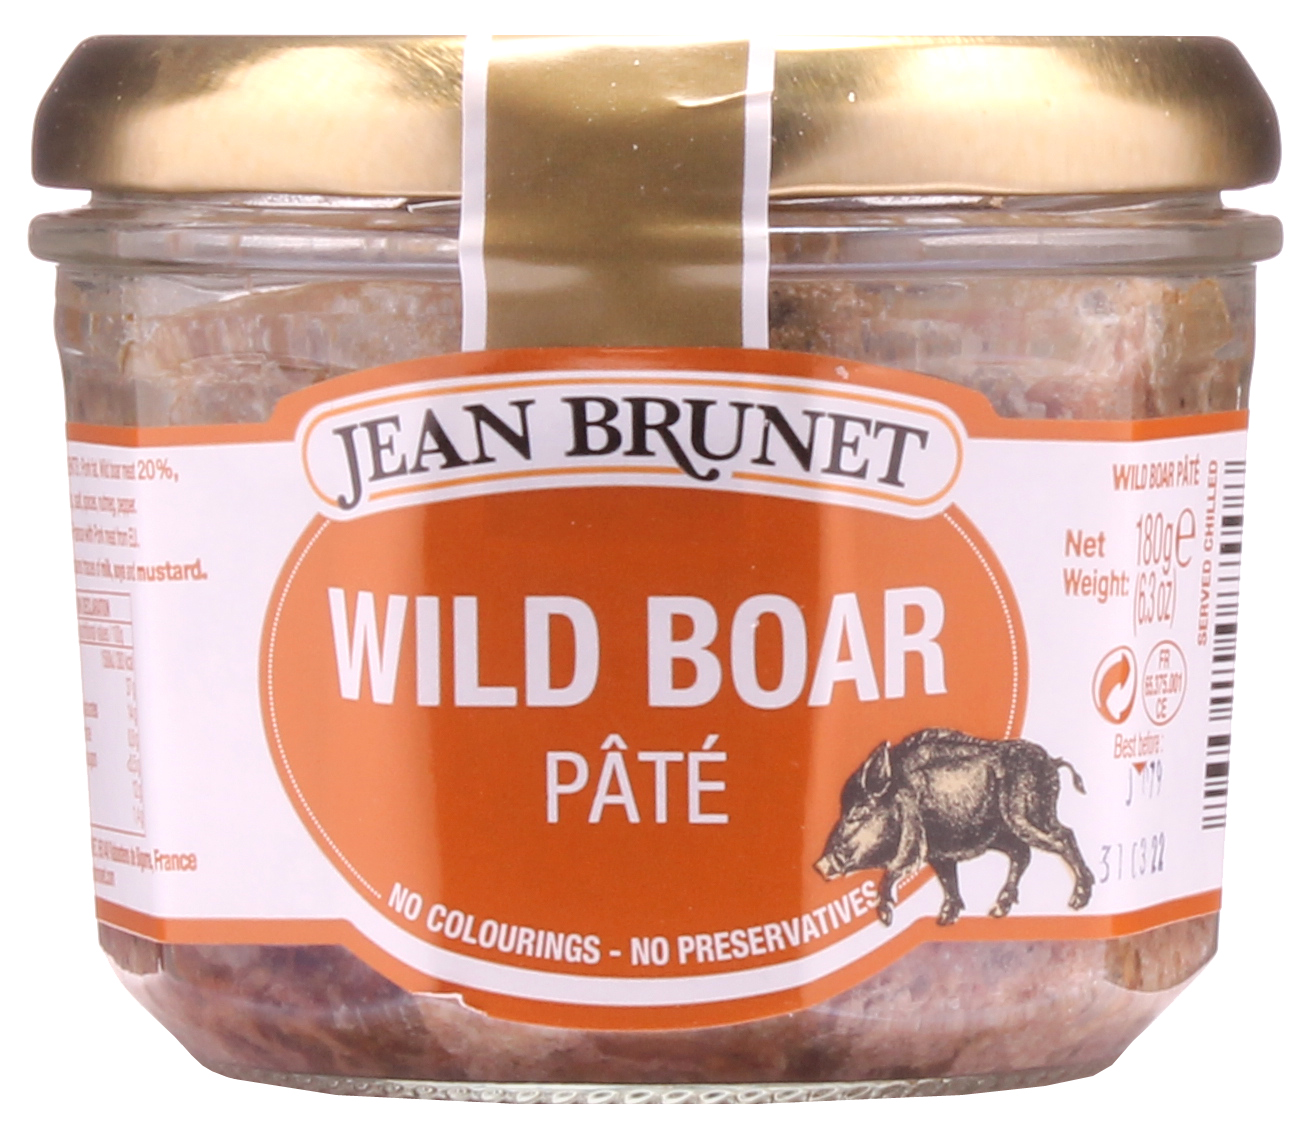 Jean Brunet Wild Boar Pate